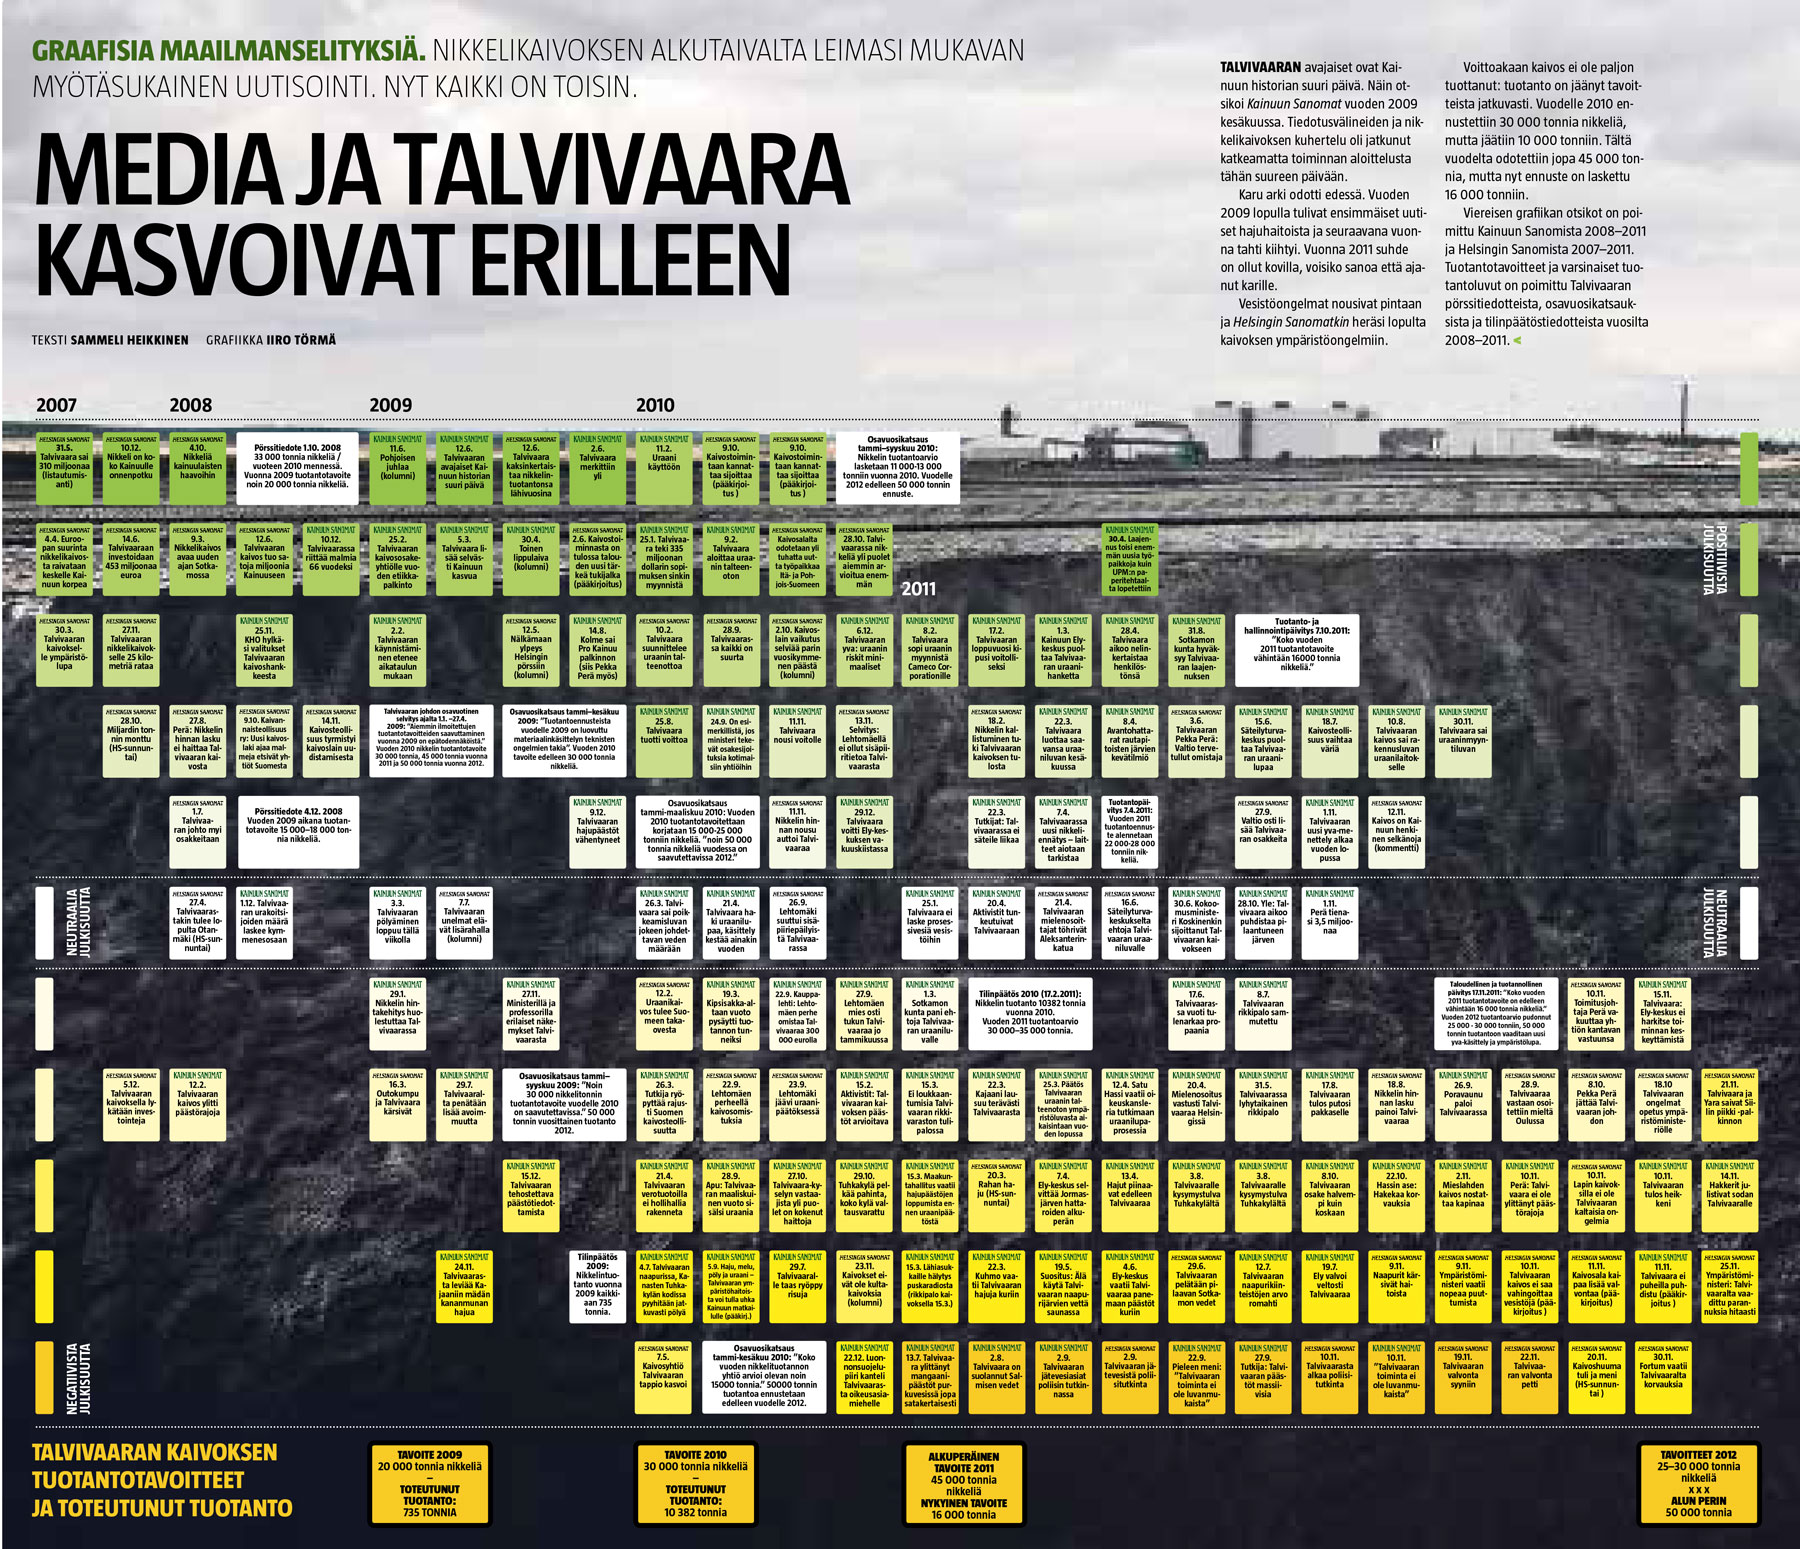 Media ja Talvivaara kasvoivat erilleen (Sammeli Heikkinen/Iiro Törmä)